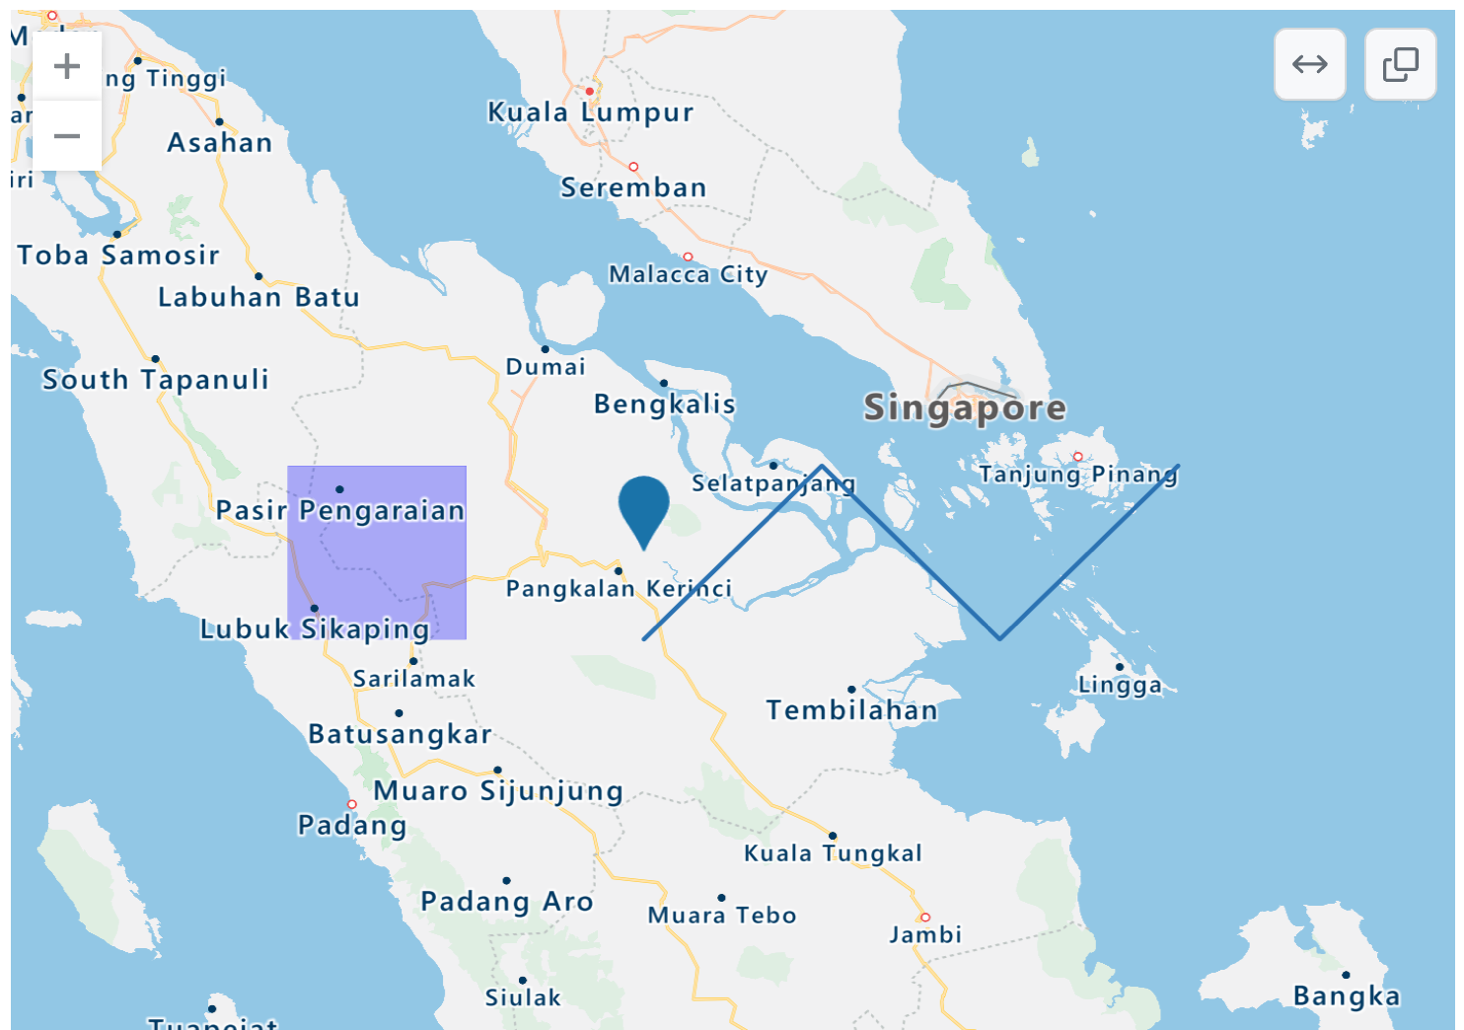 インドネシア、シンガポール、マレーシアの一部をレンダリングした TopoJSON 地図のスクリーンショット。青色点、紫色の四角いオーバーレイ、青色のジグザグの線があります。